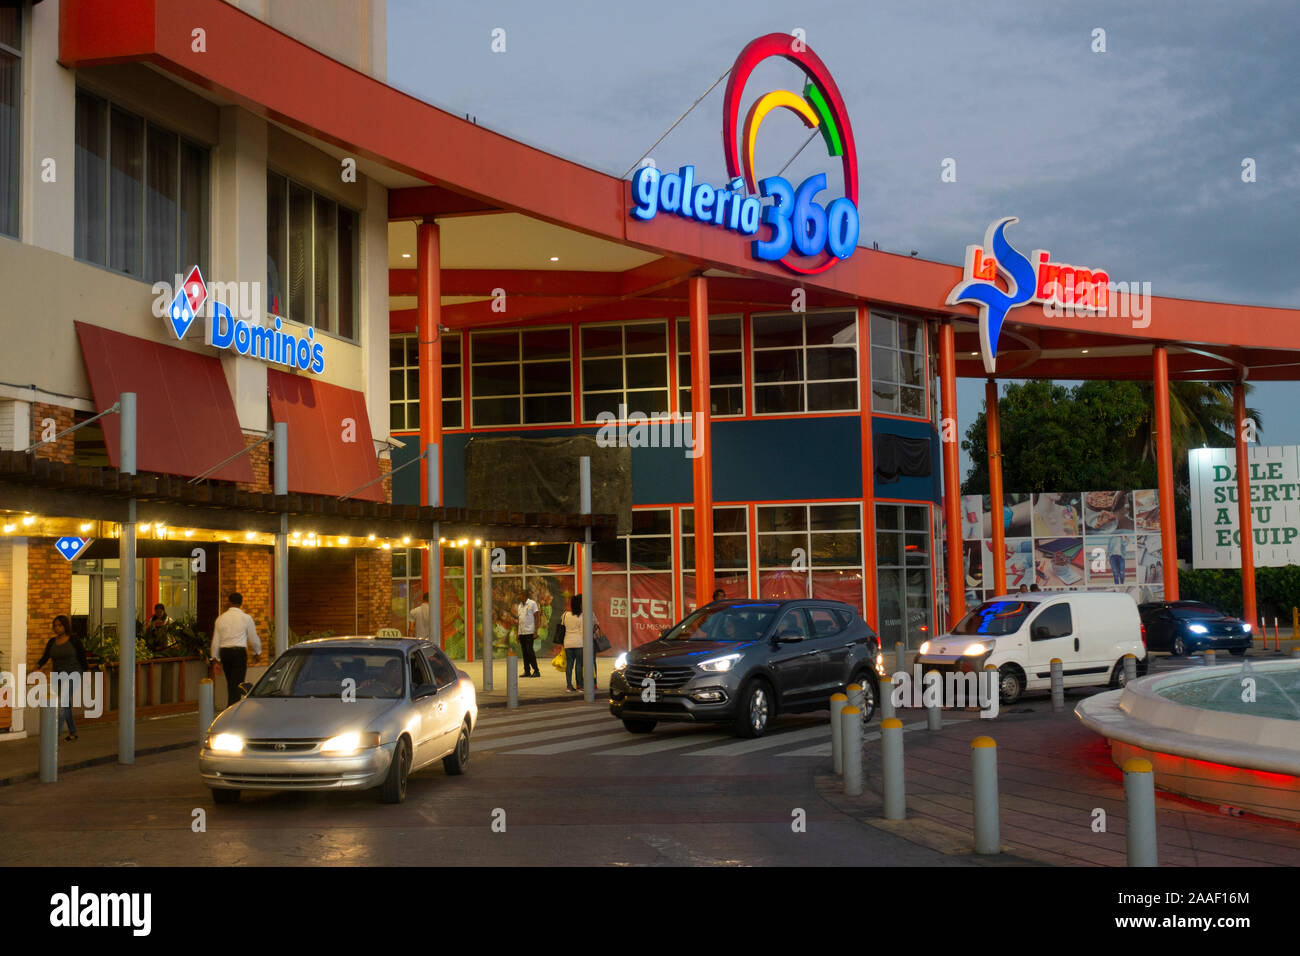 Galeria 360 shopping plaza in Santo Domingo Dominican Republic Stock Photo